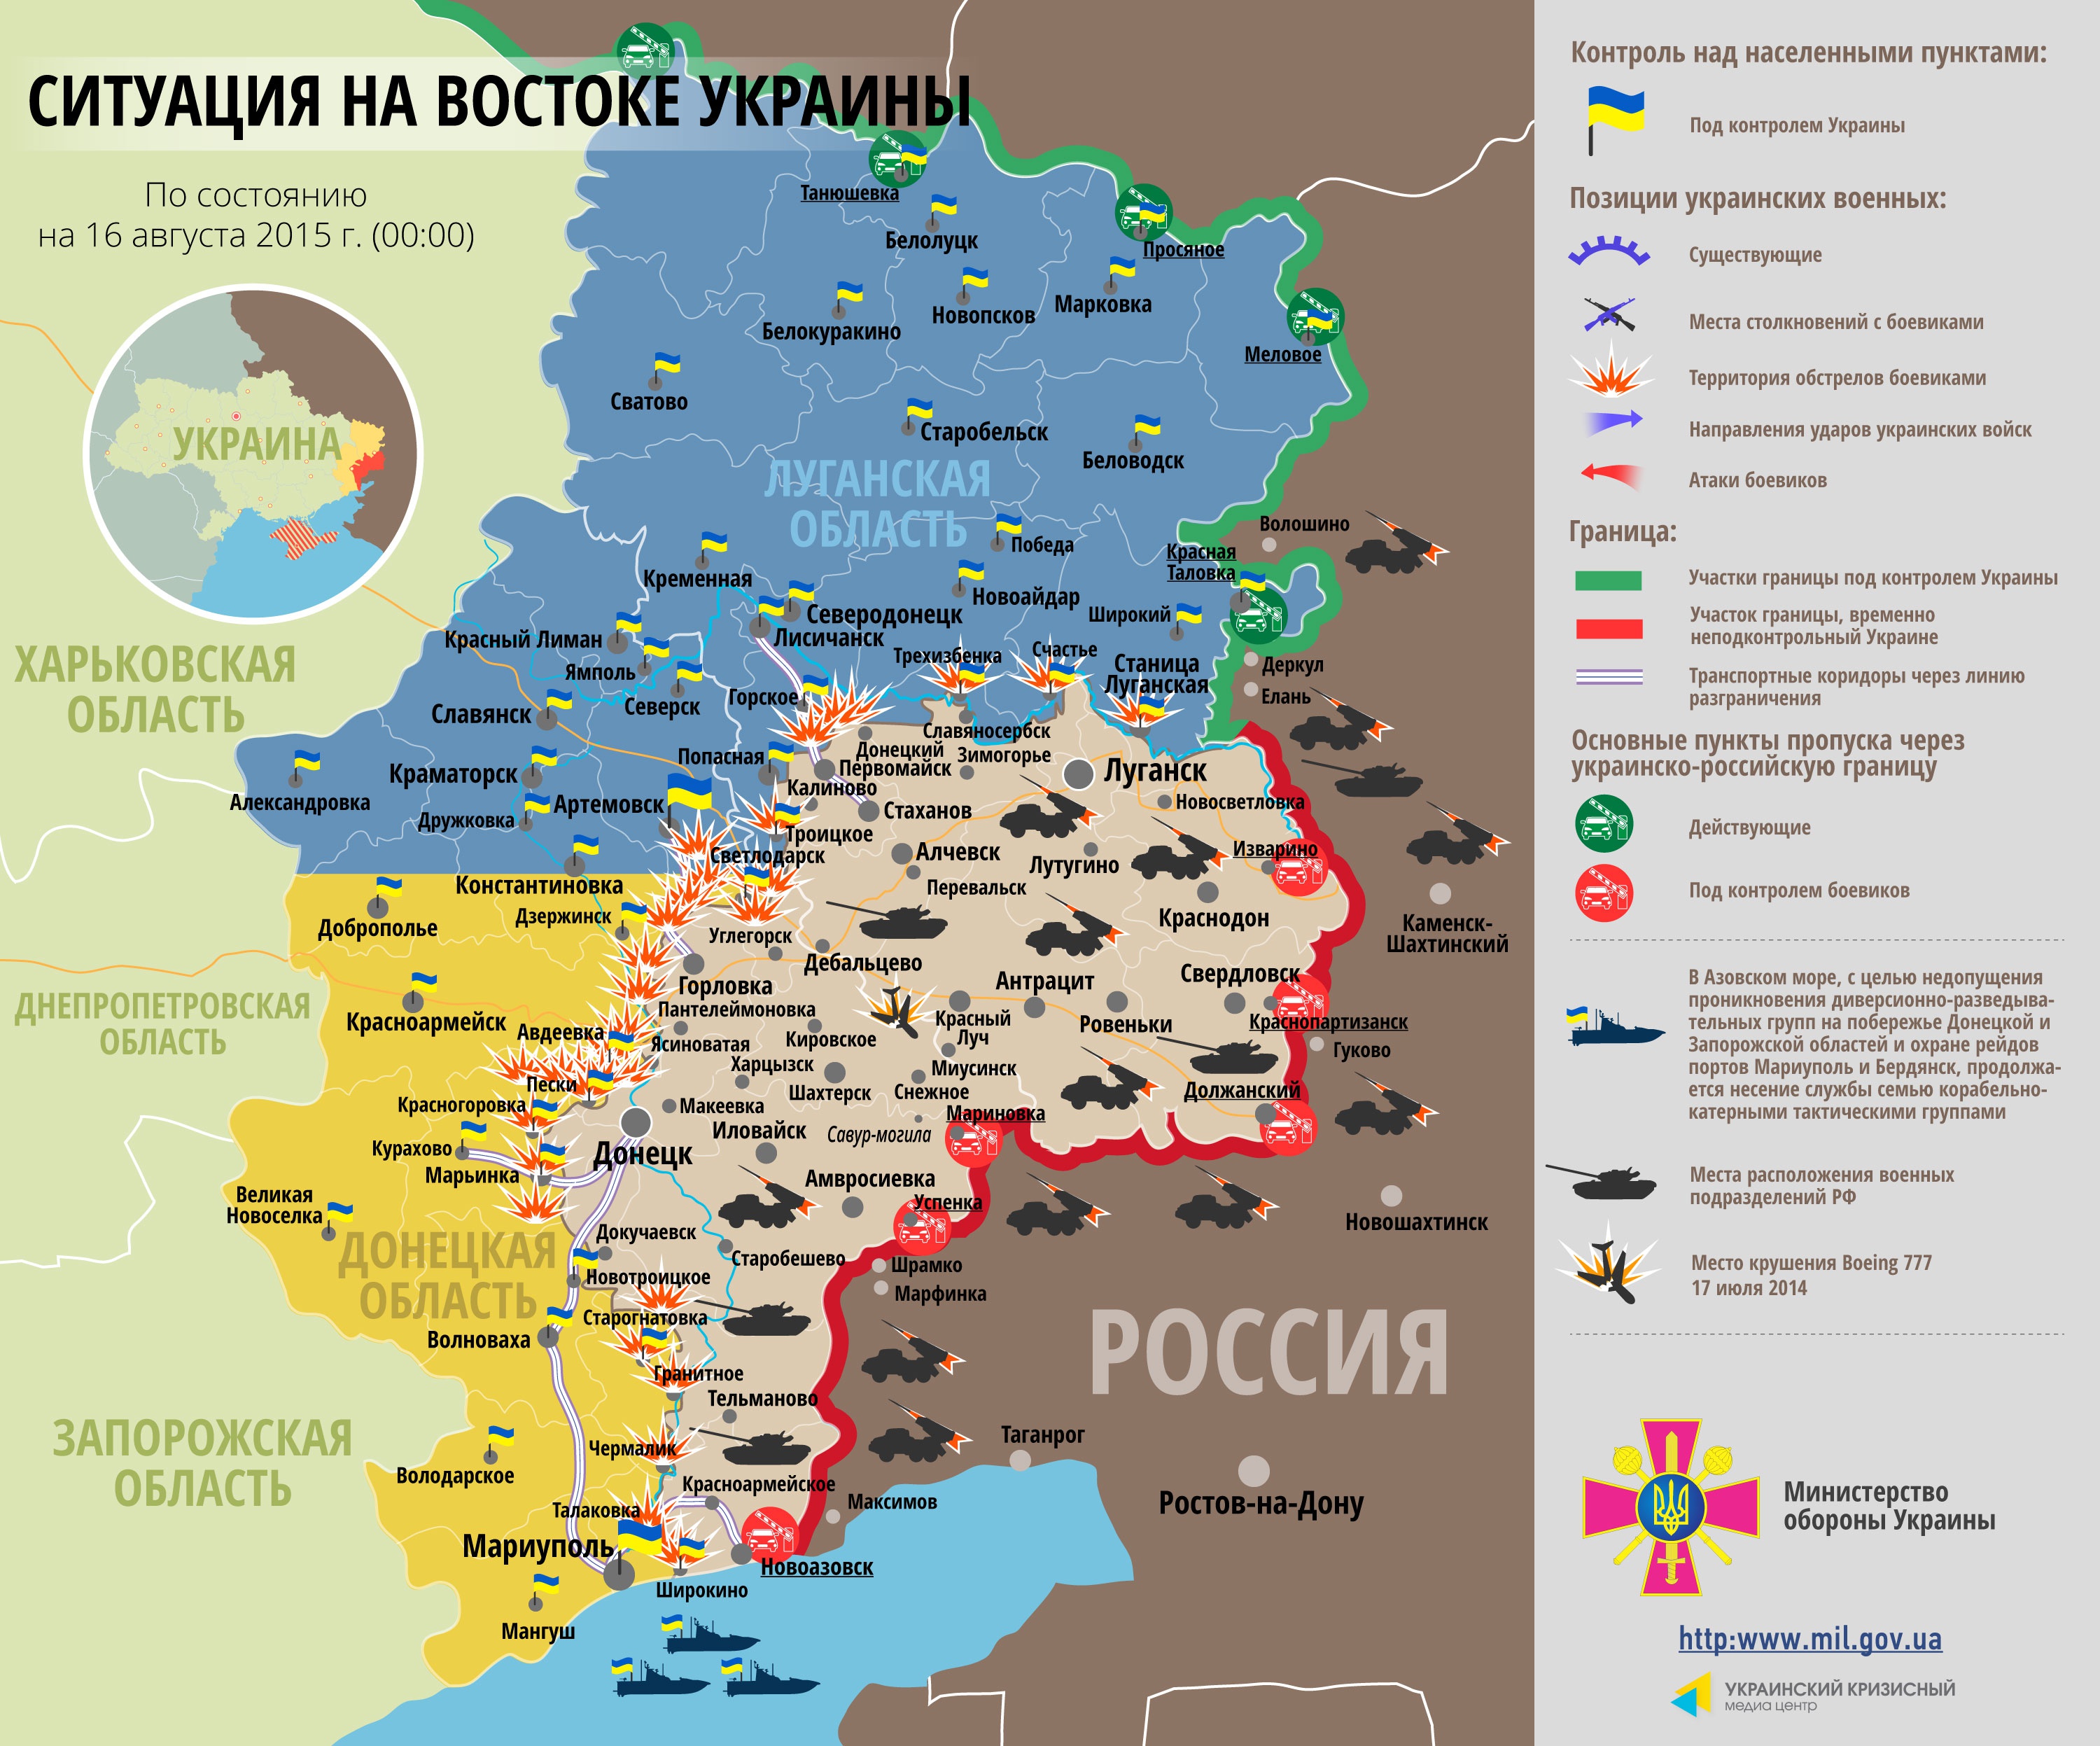 Самые резонансные события дня в Донбассе: смерть в Донецке и угроза наступления (фото)